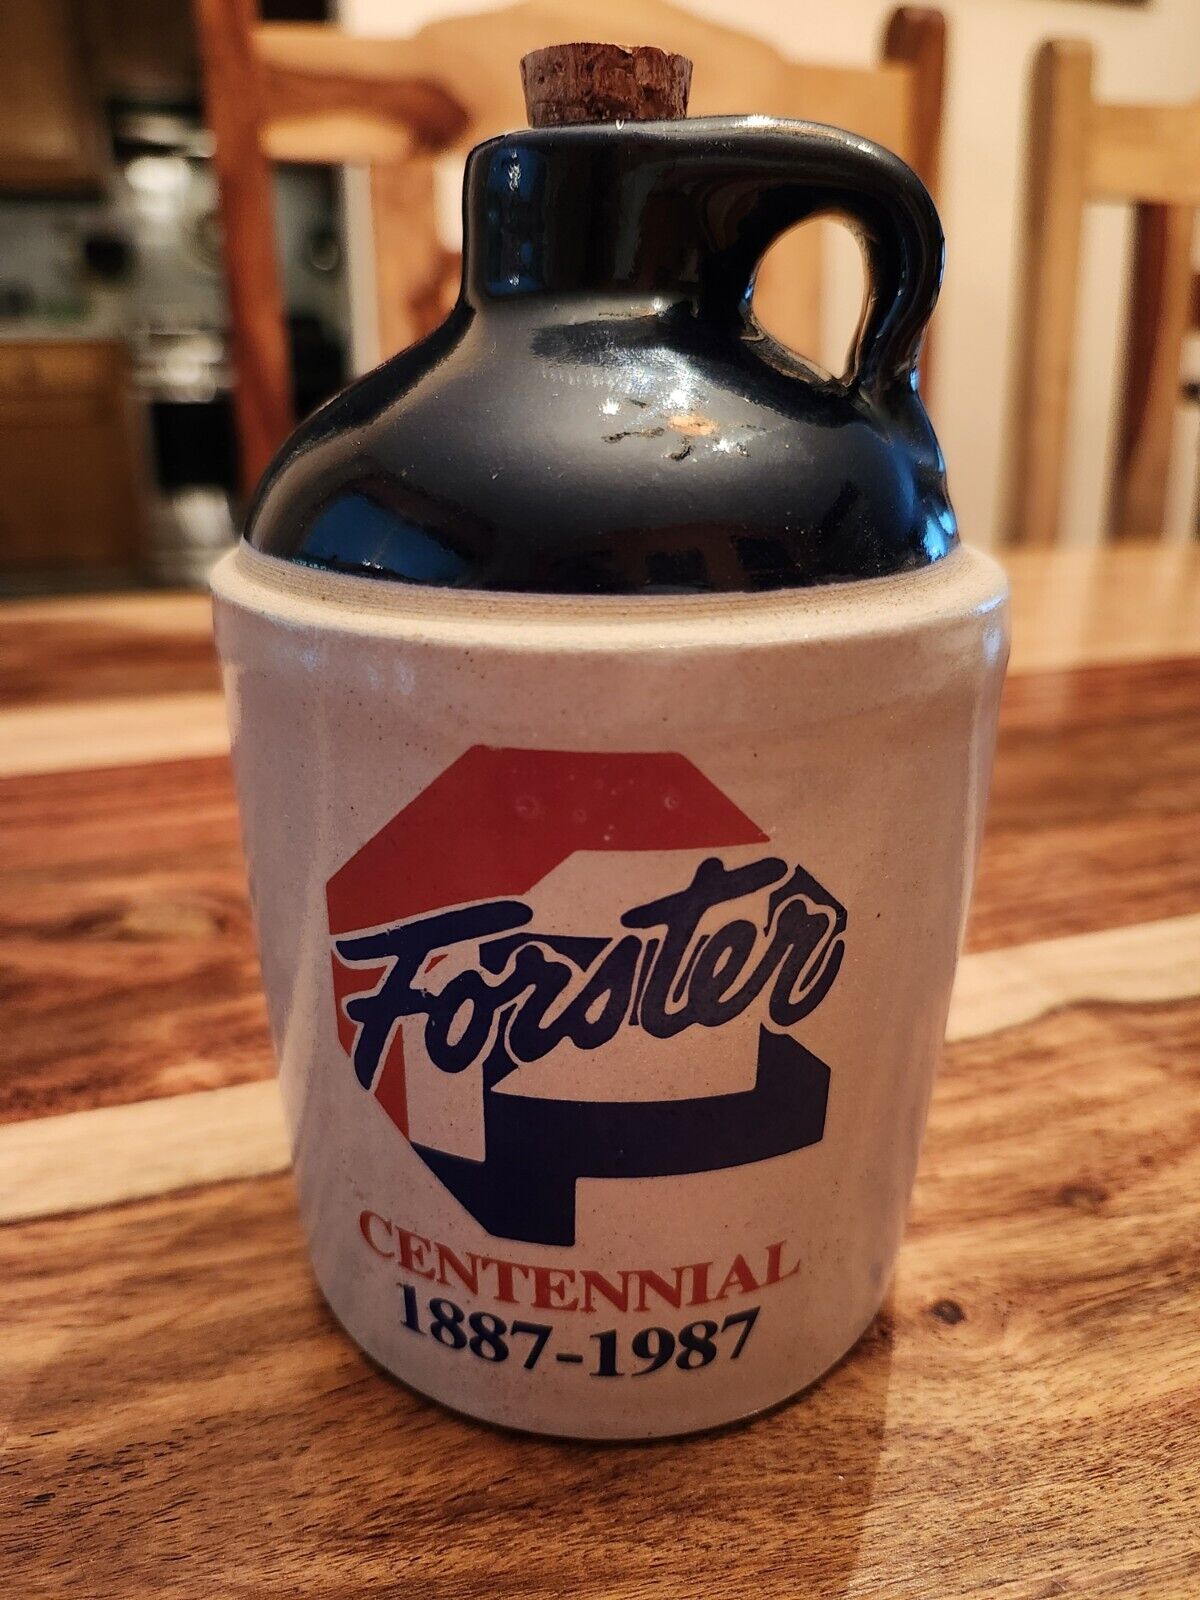 Forster Centennial 1887-1987, Crock Jug, Blue/Beige/Red, Cork Stopper, Vintage